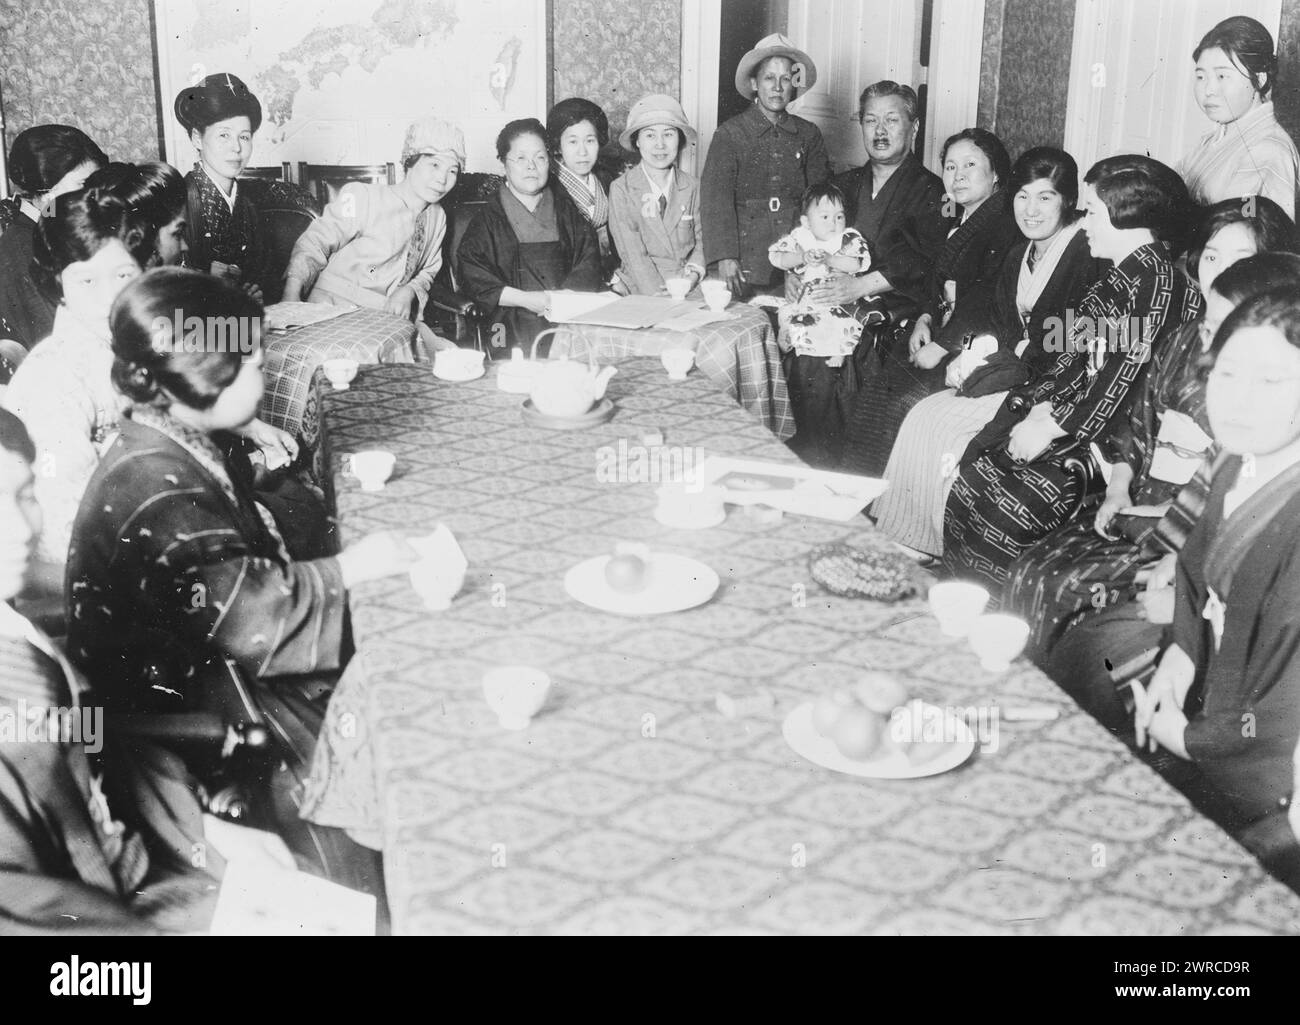 Japanische Suffragistinnen, Morita, Foto zeigt eine Gruppe von Frauen, die um einen Tisch sitzen. Ein Mann, identifiziert als "Morita", hält ein Kind in seinem Schoß. 21. Juli 1927, Glas-negative, 1 negativ: Glas Stockfoto